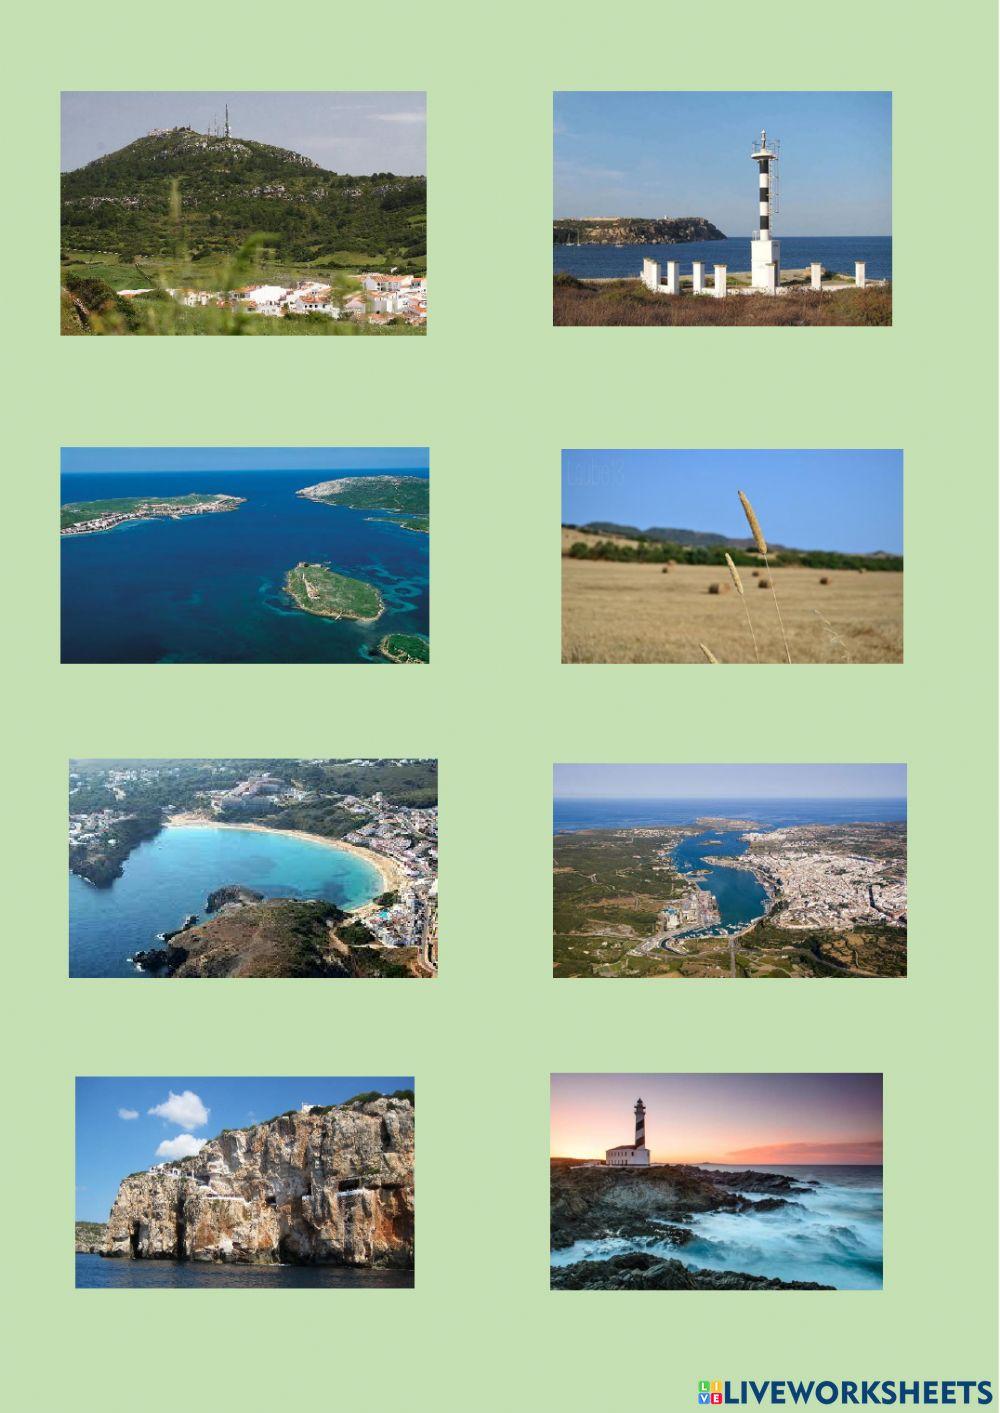 Relleu de Menorca